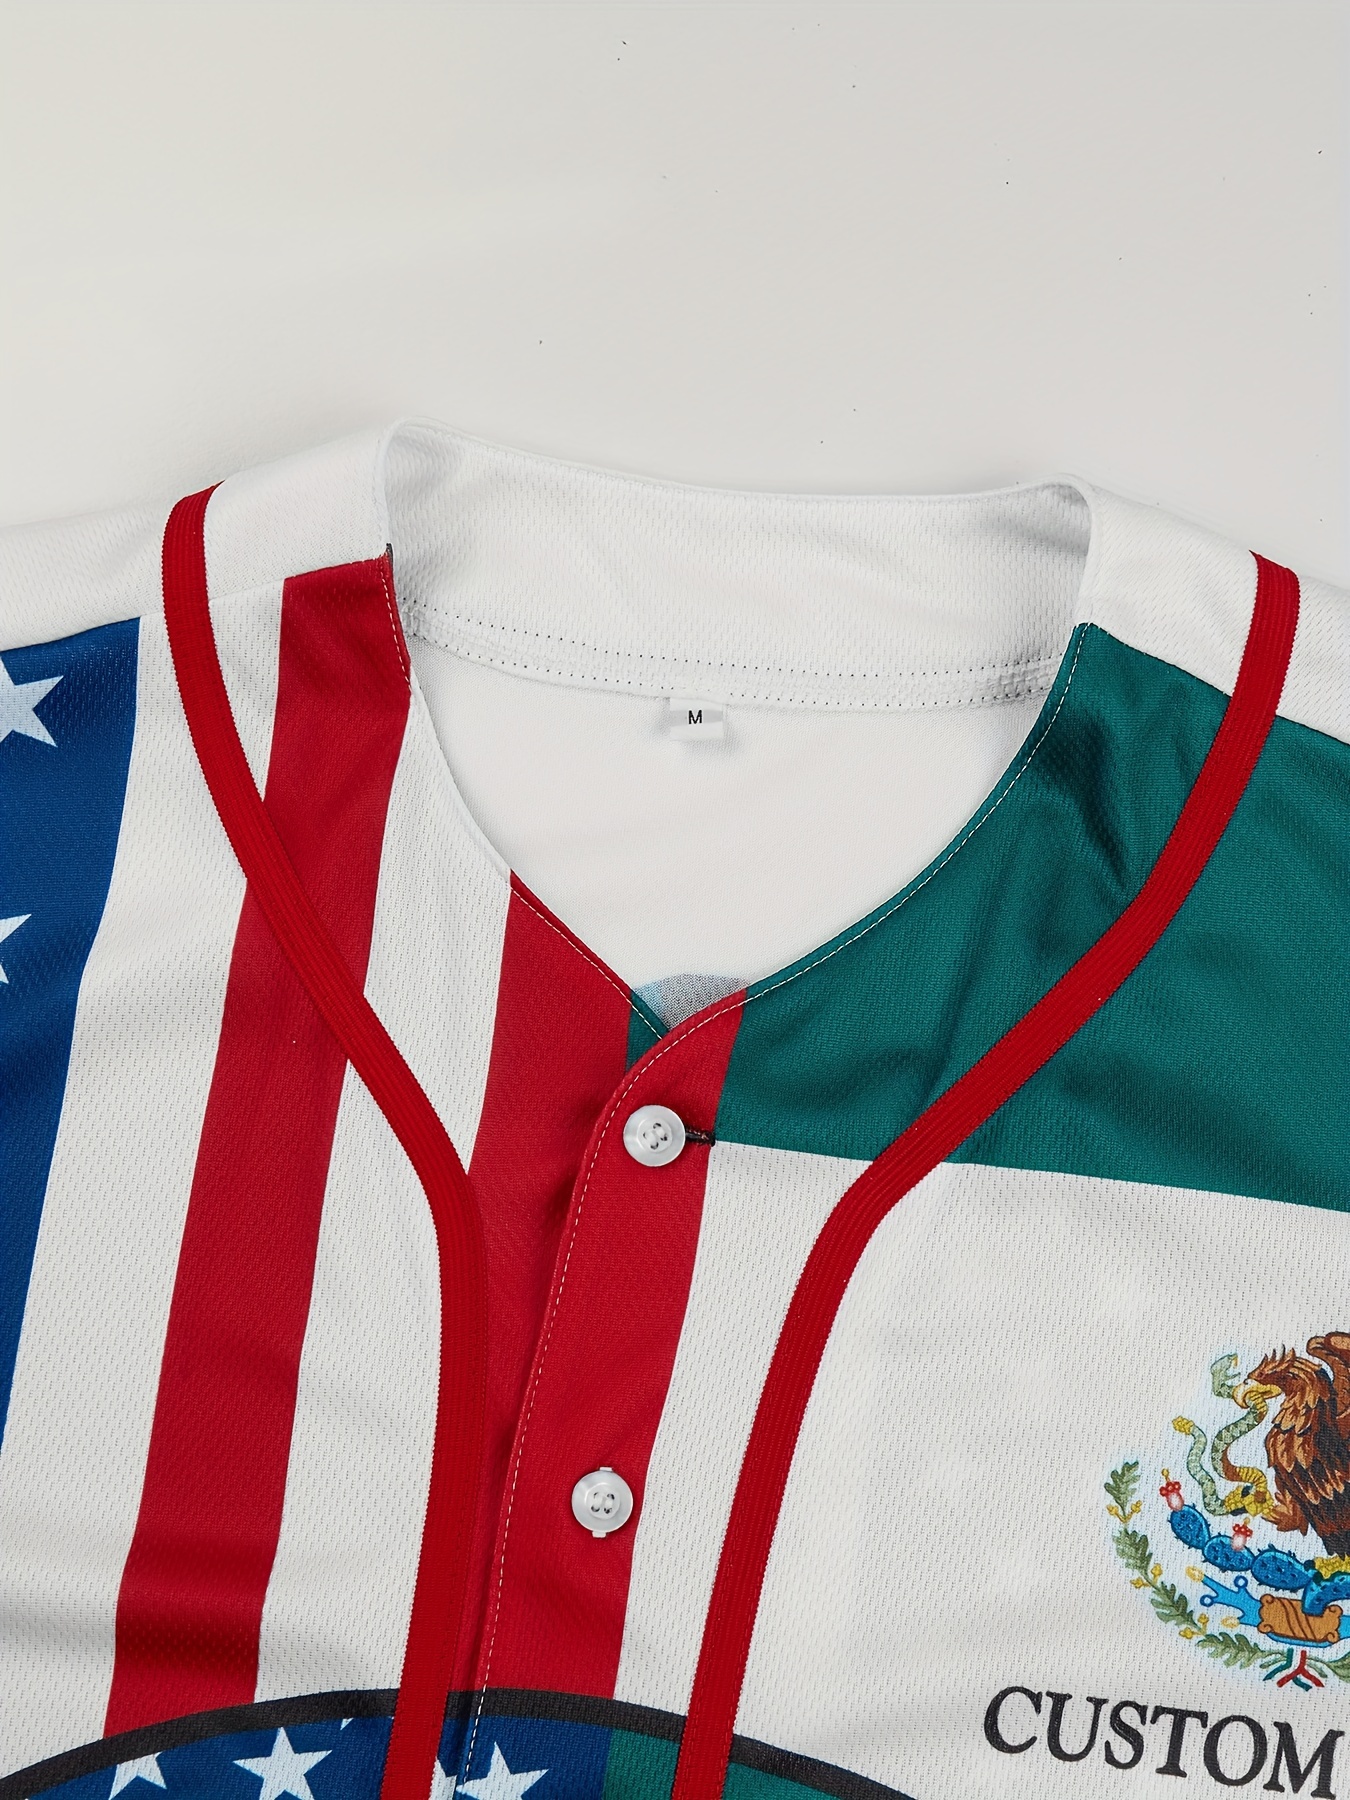  American Flag Custom Baseball Jersey USA Flag Printed